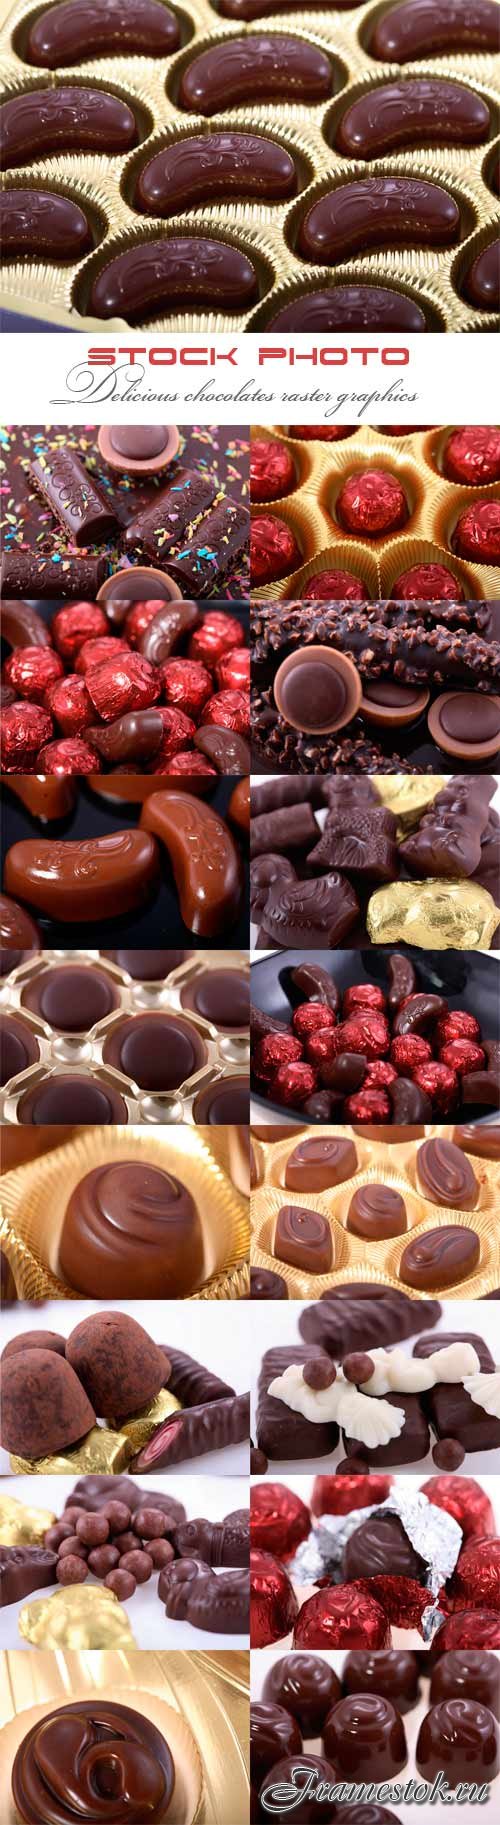 Delicious chocolates raster graphics